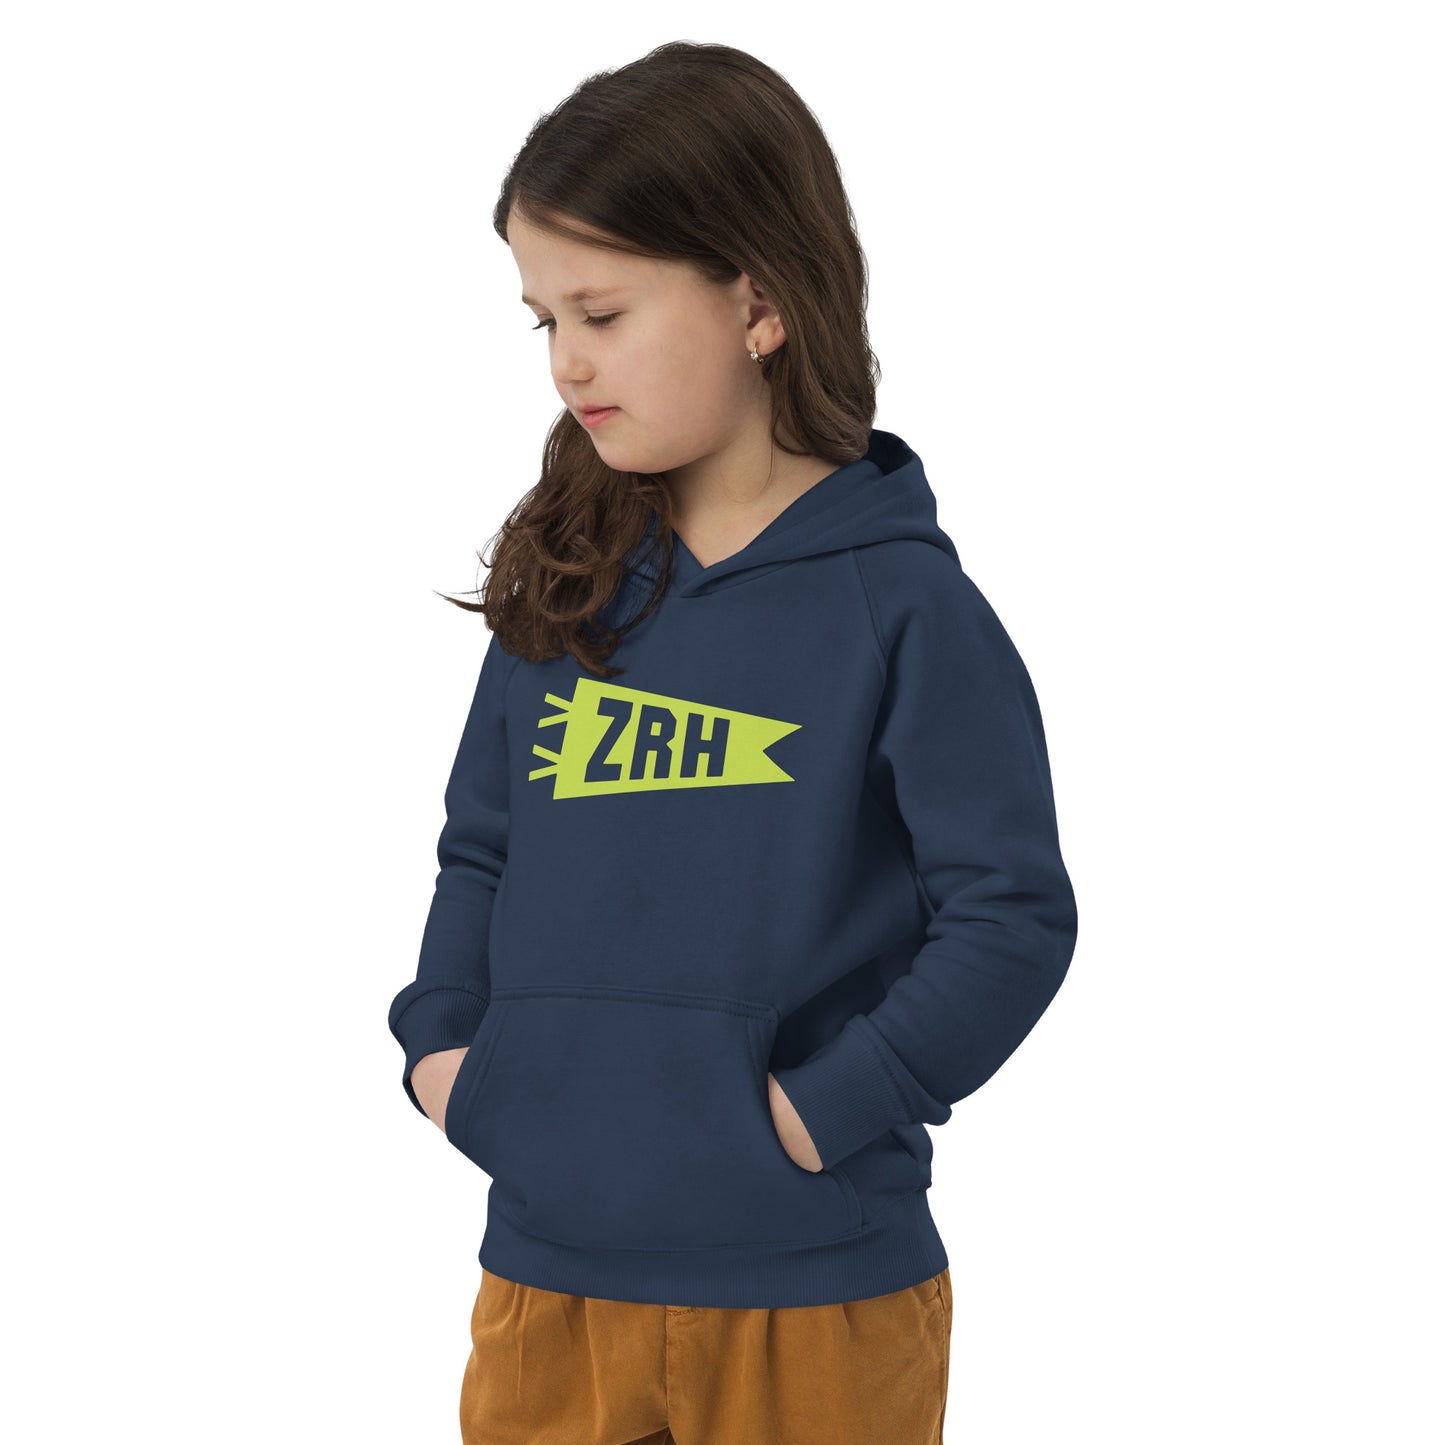 Kid's Sustainable Hoodie - Green Graphic • ZRH Zurich • YHM Designs - Image 05